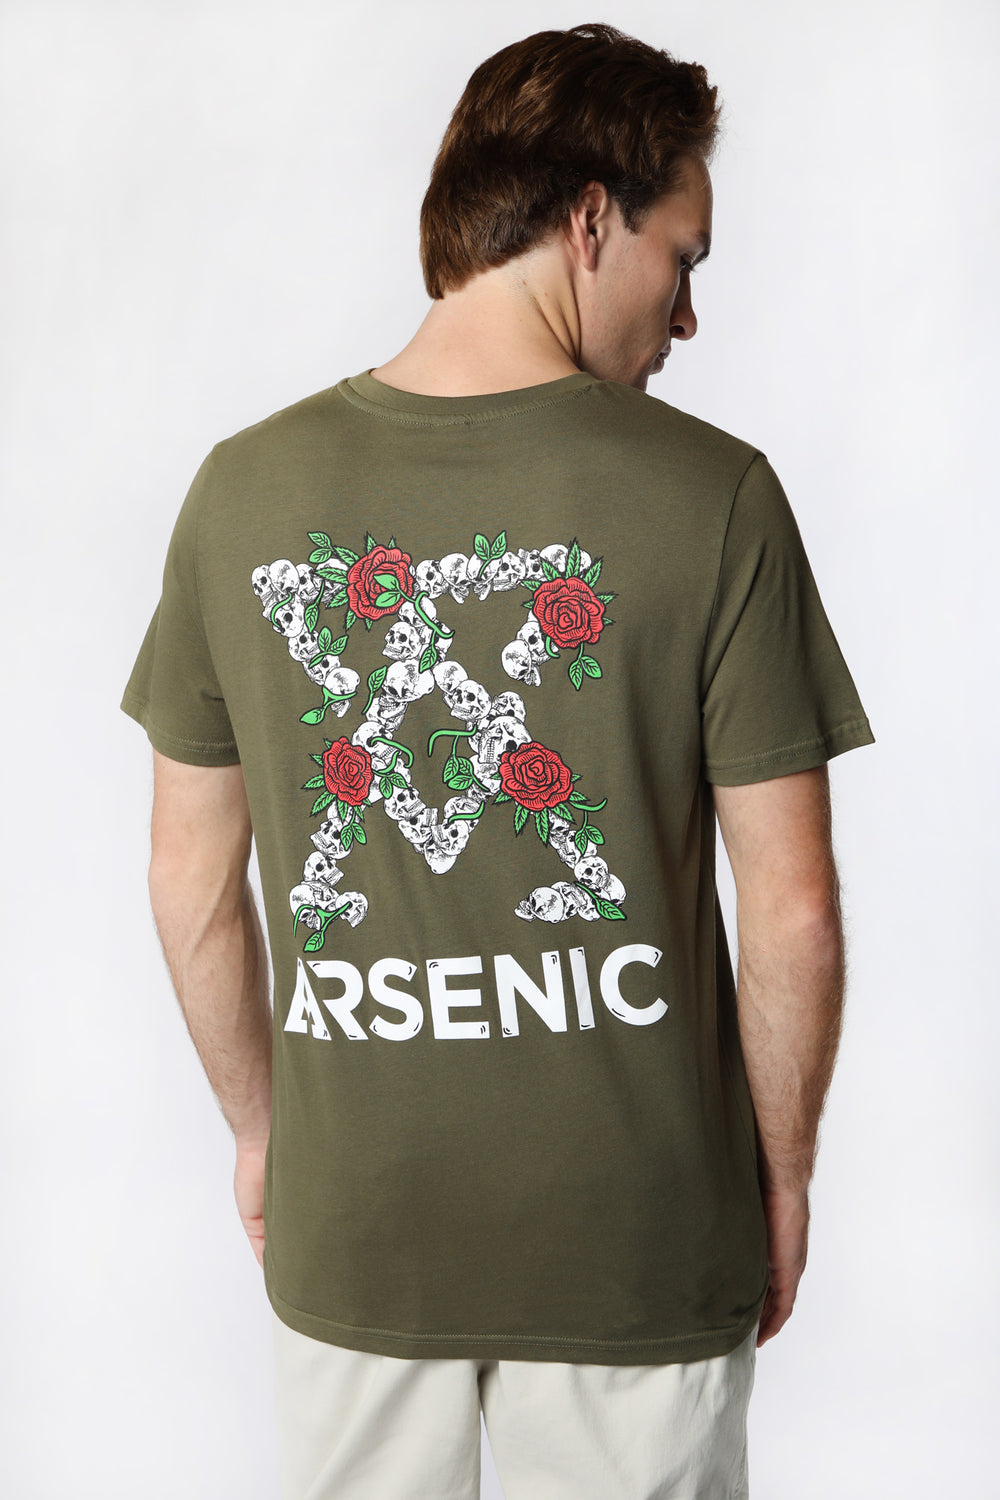 Arsenic Mens Skulls & Roses T-Shirt Arsenic Mens Skulls & Roses T-Shirt